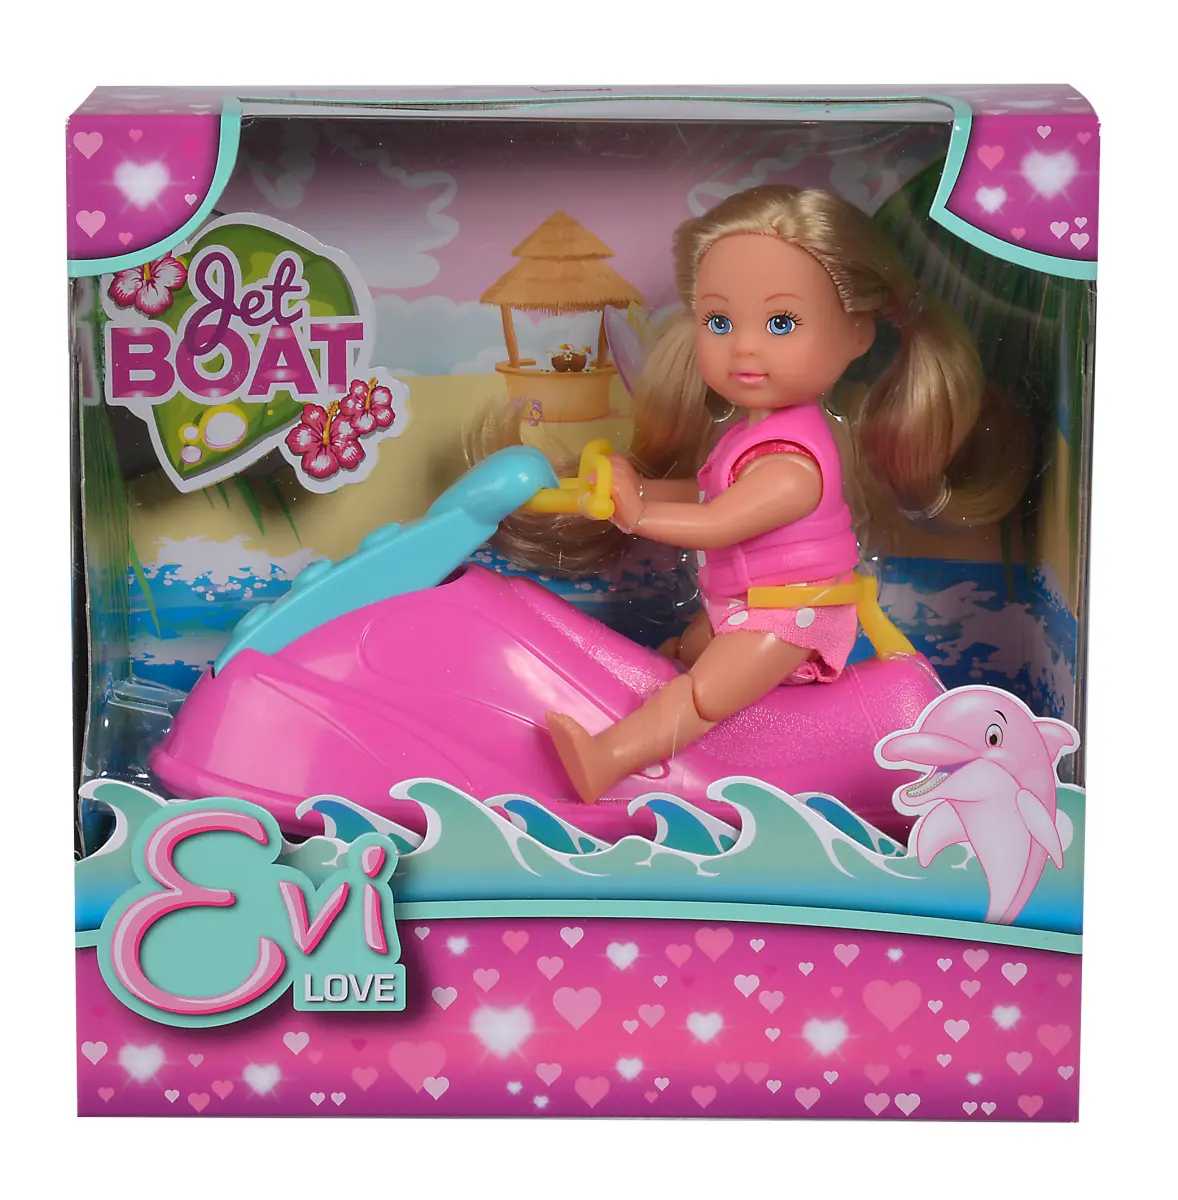 Кукла Еви в купальнике на водном скутере - фото